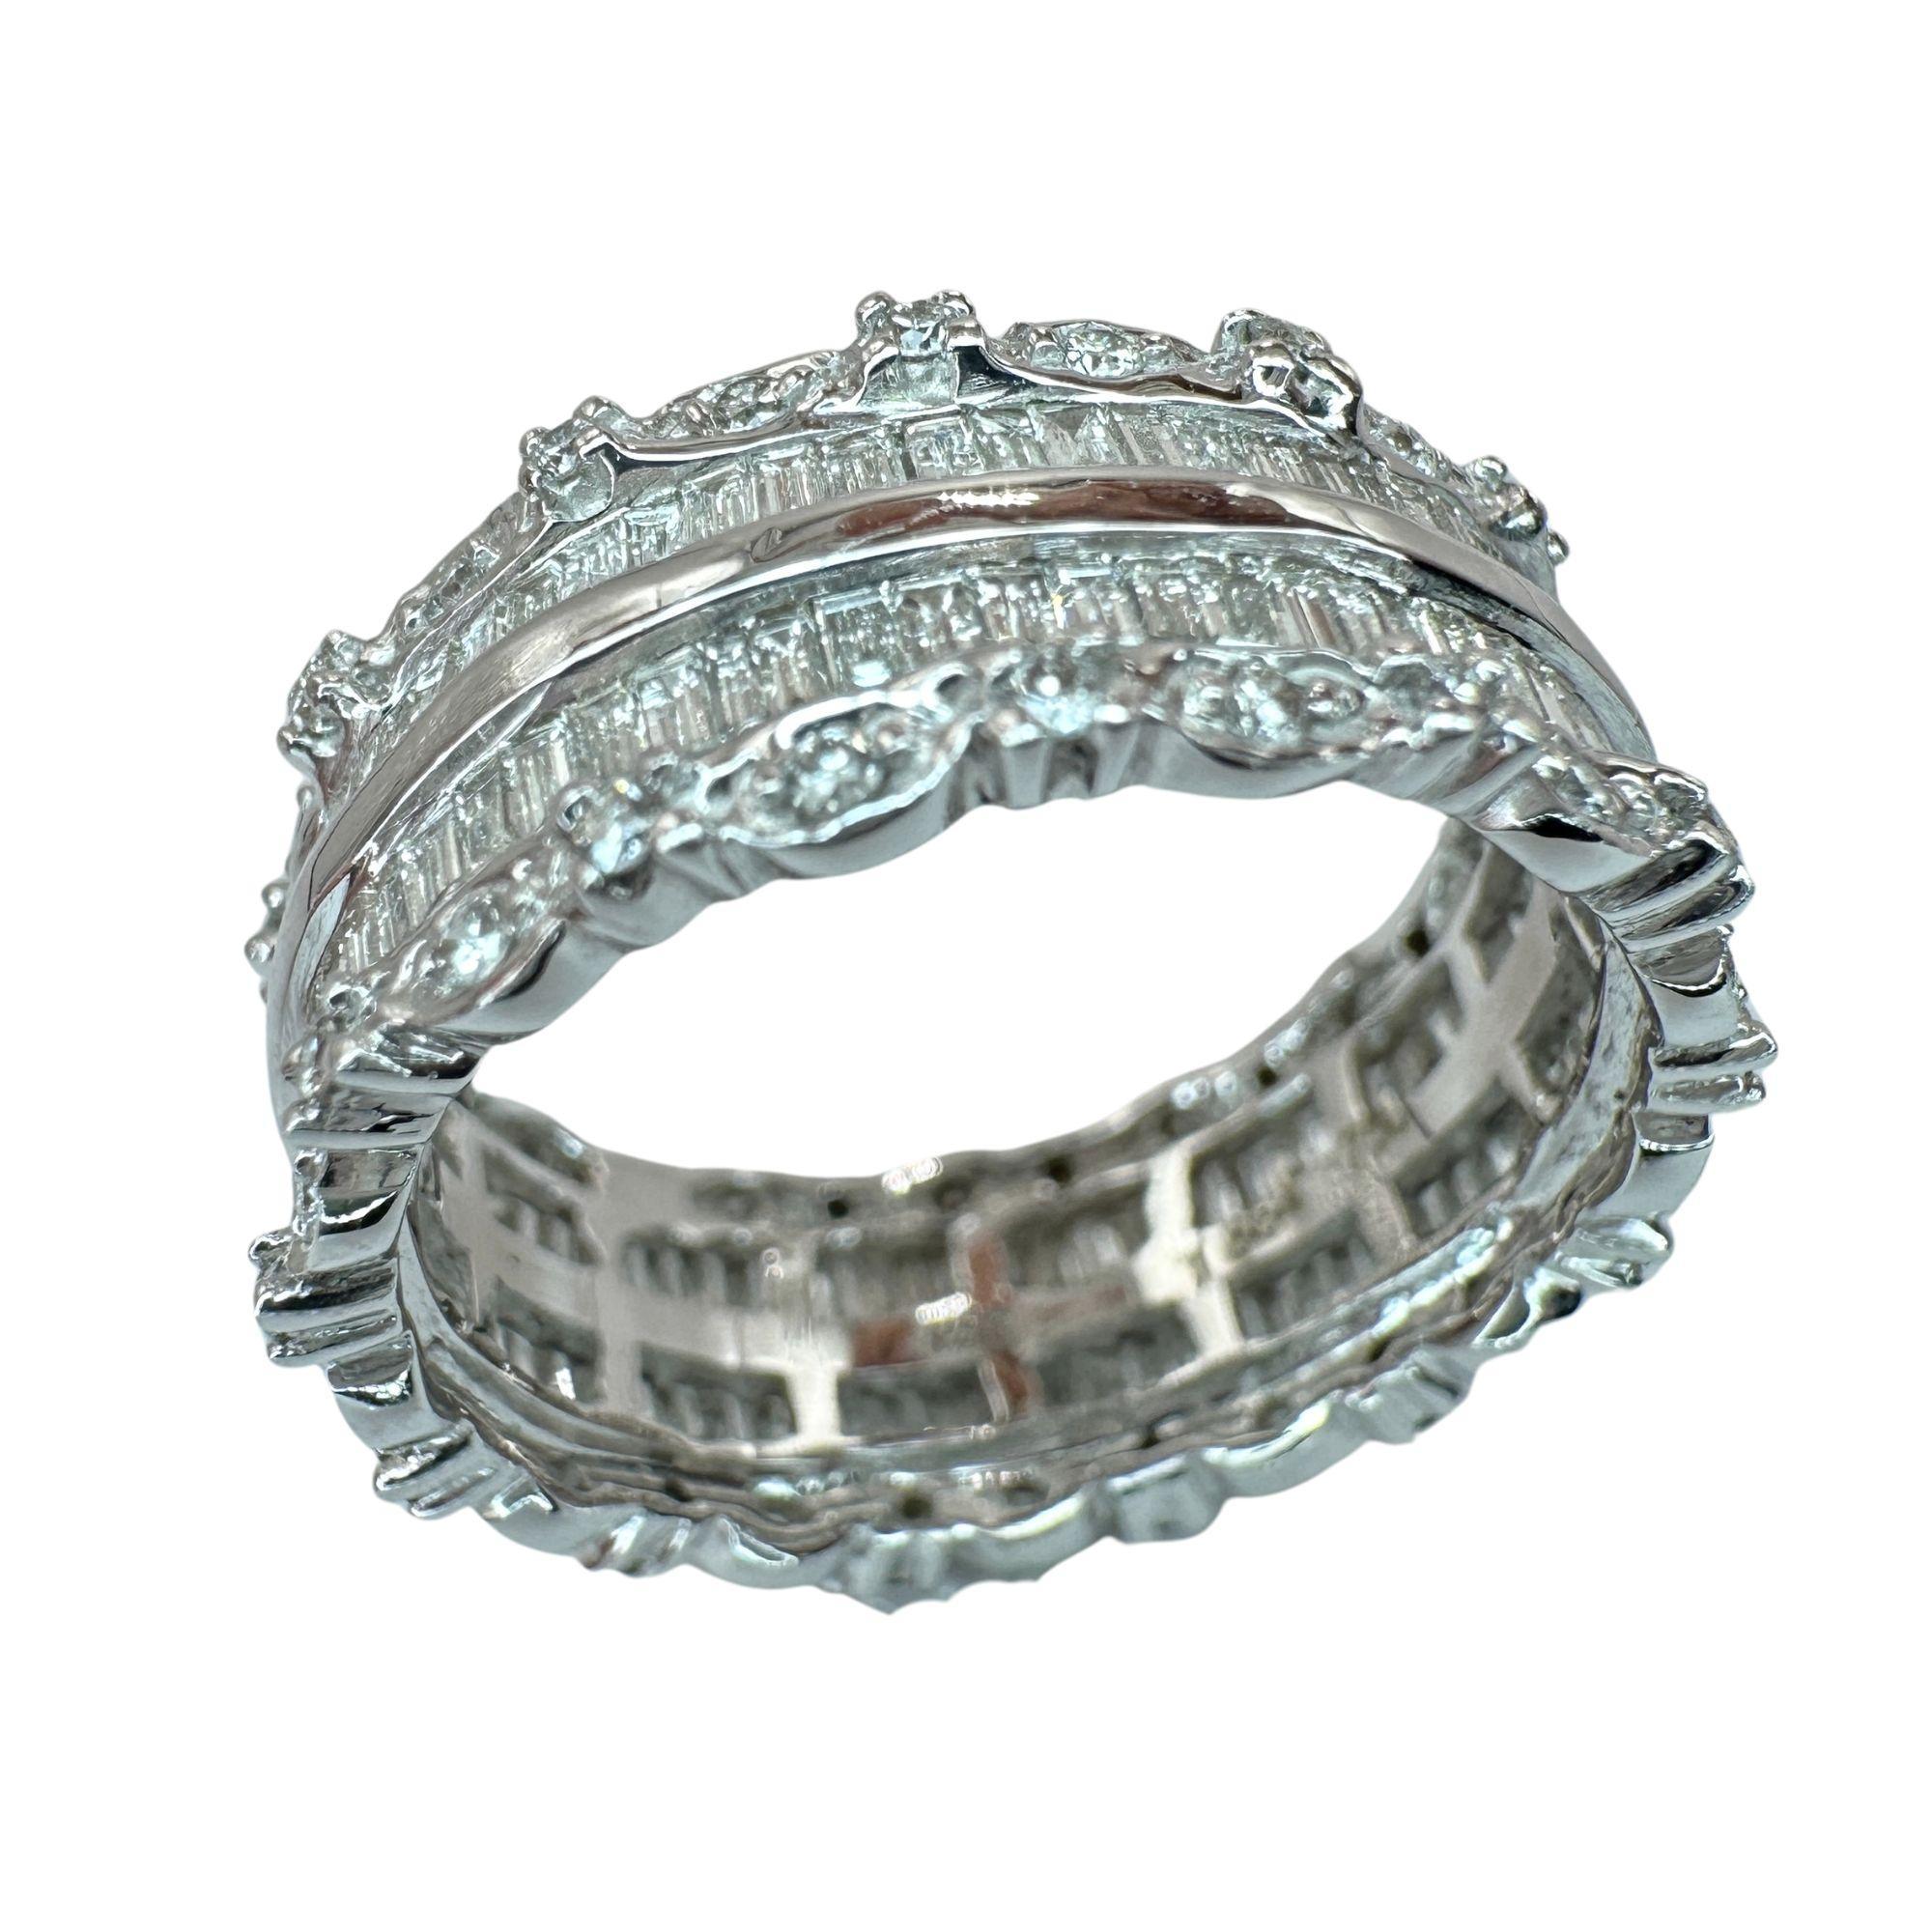 Gönnen Sie sich Luxus mit unserem 18k Baguette Cut Diamond Band Ring. Dieses elegante Schmuckstück ist aus 18 Karat Weißgold gefertigt und mit 1,12 Karat funkelnden Diamanten im Baguetteschliff und 0,33 Karat Diamanten besetzt. Perfekt, um jedem